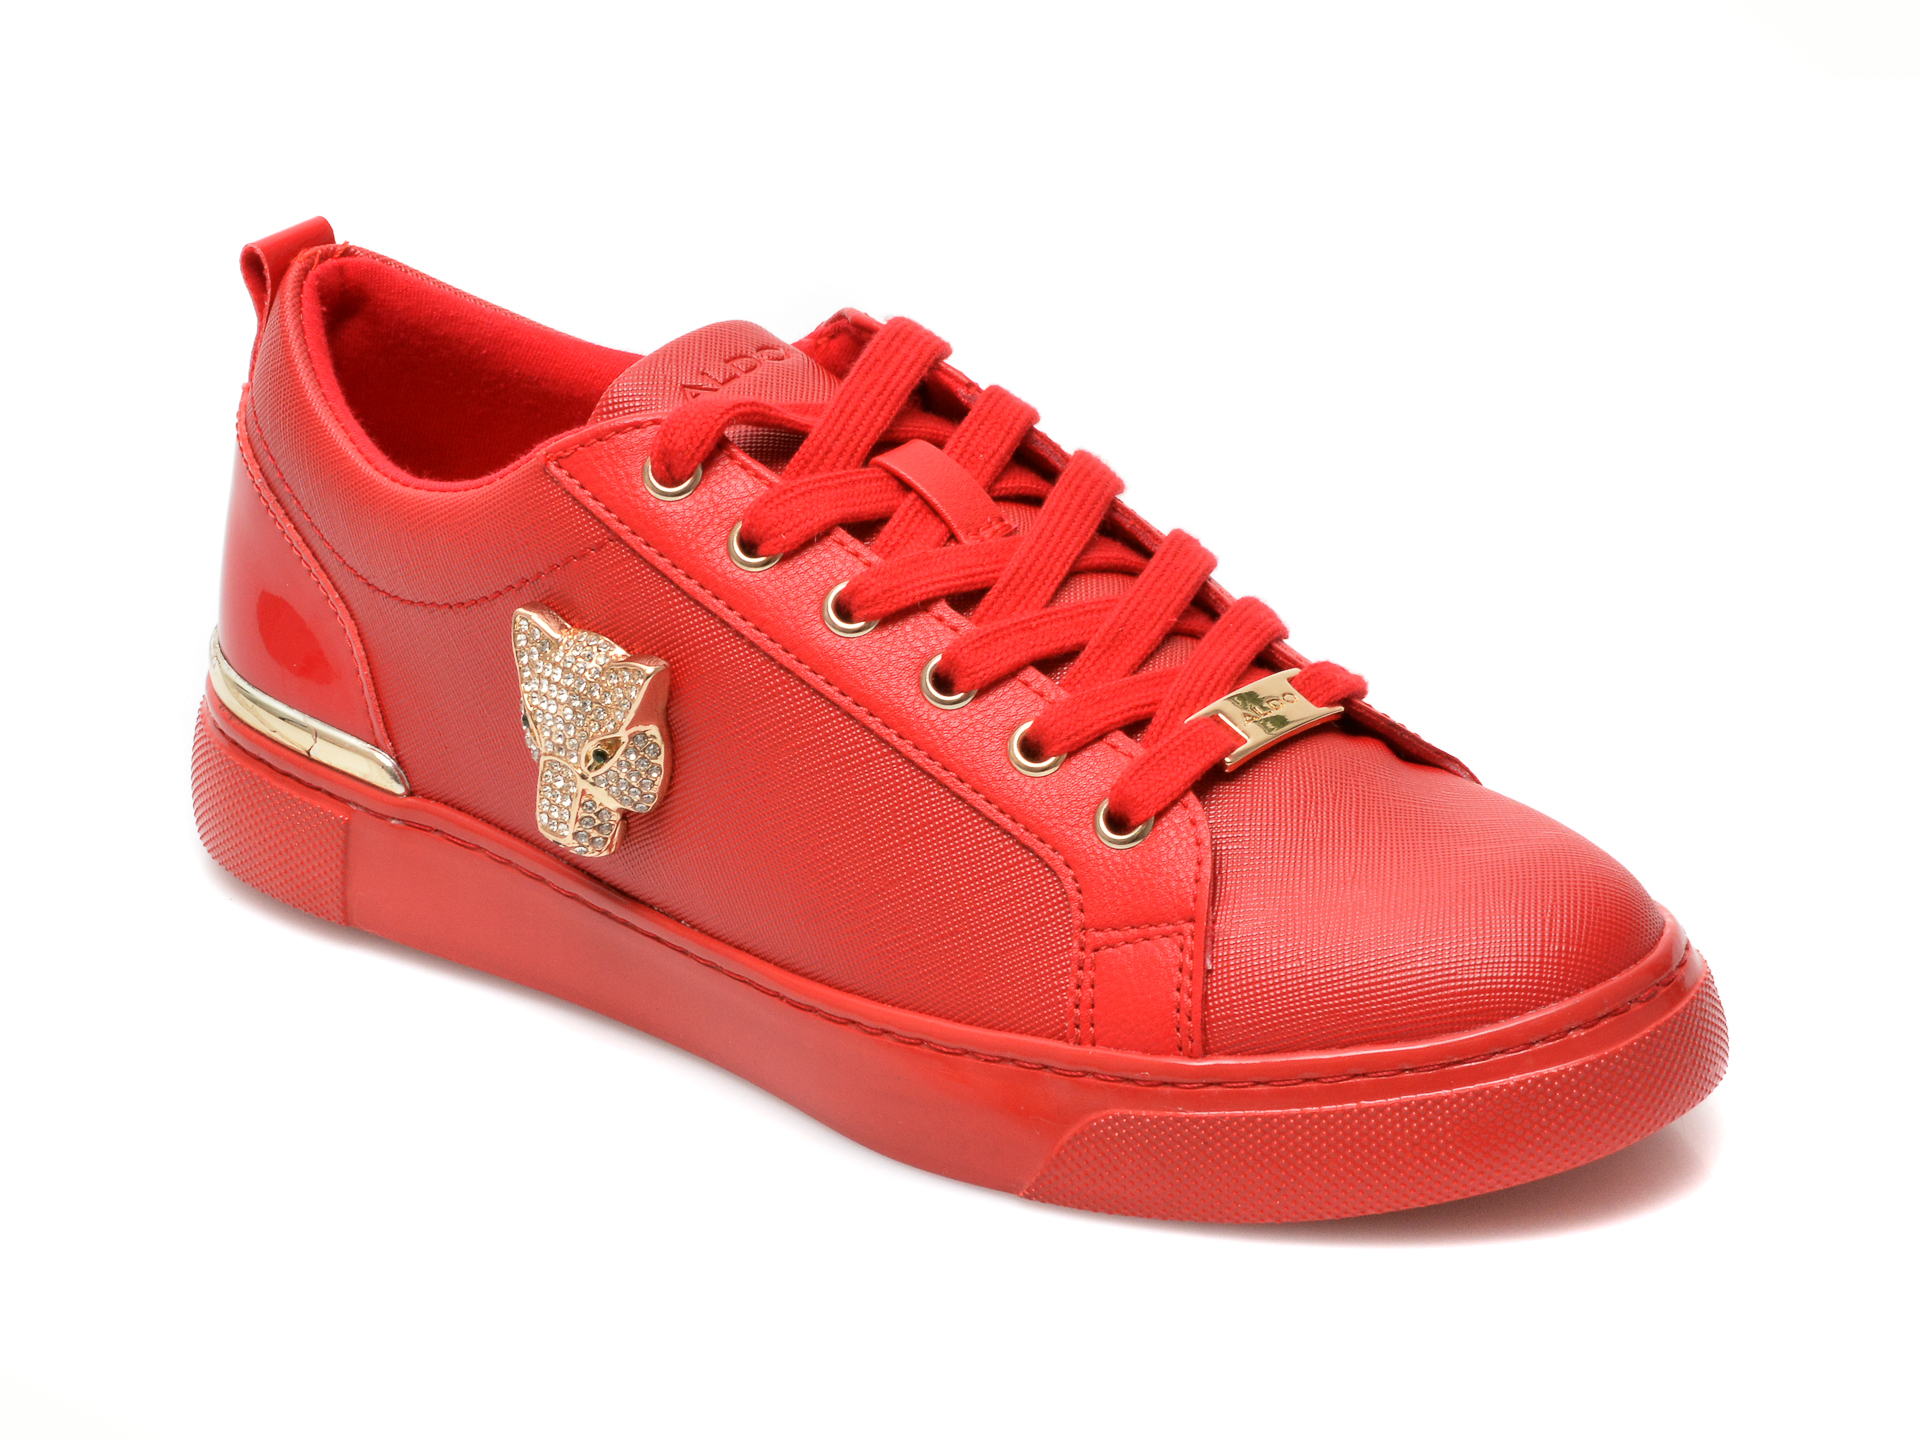 Pantofi ALDO rosii, FRAYLDAN600, din piele ecologica Aldo imagine reduceri